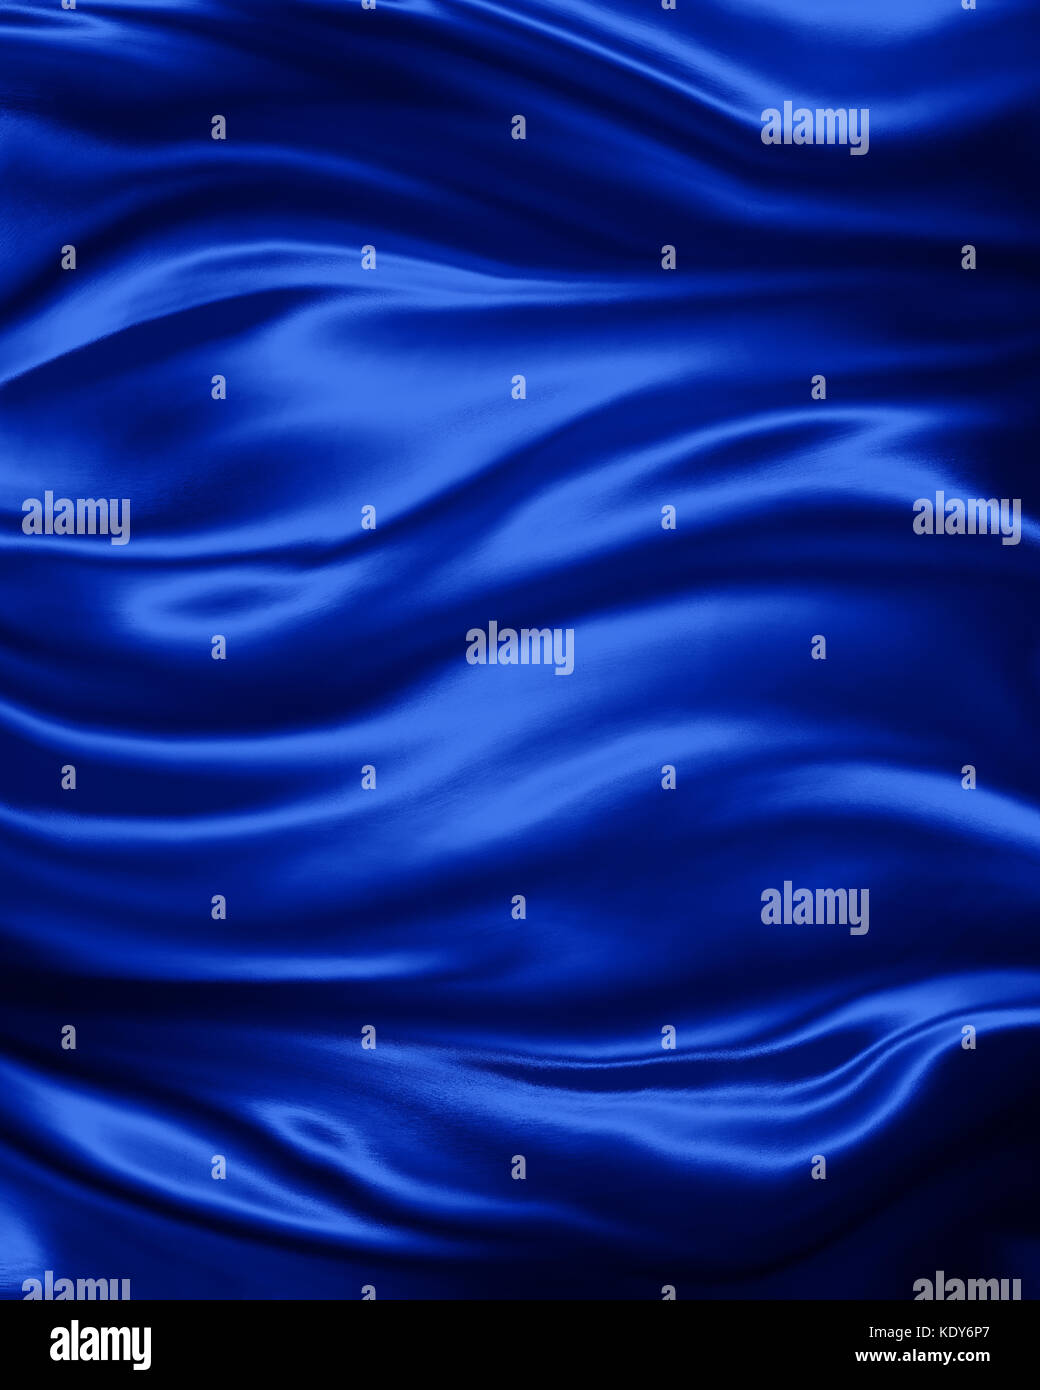 Elegante Luxus Saphir blau Hintergrund mit gewellten Falten des Tuches drapiert, glatte Seide Textur mit Falten und Fältchen in fließende Qualität Stockfoto